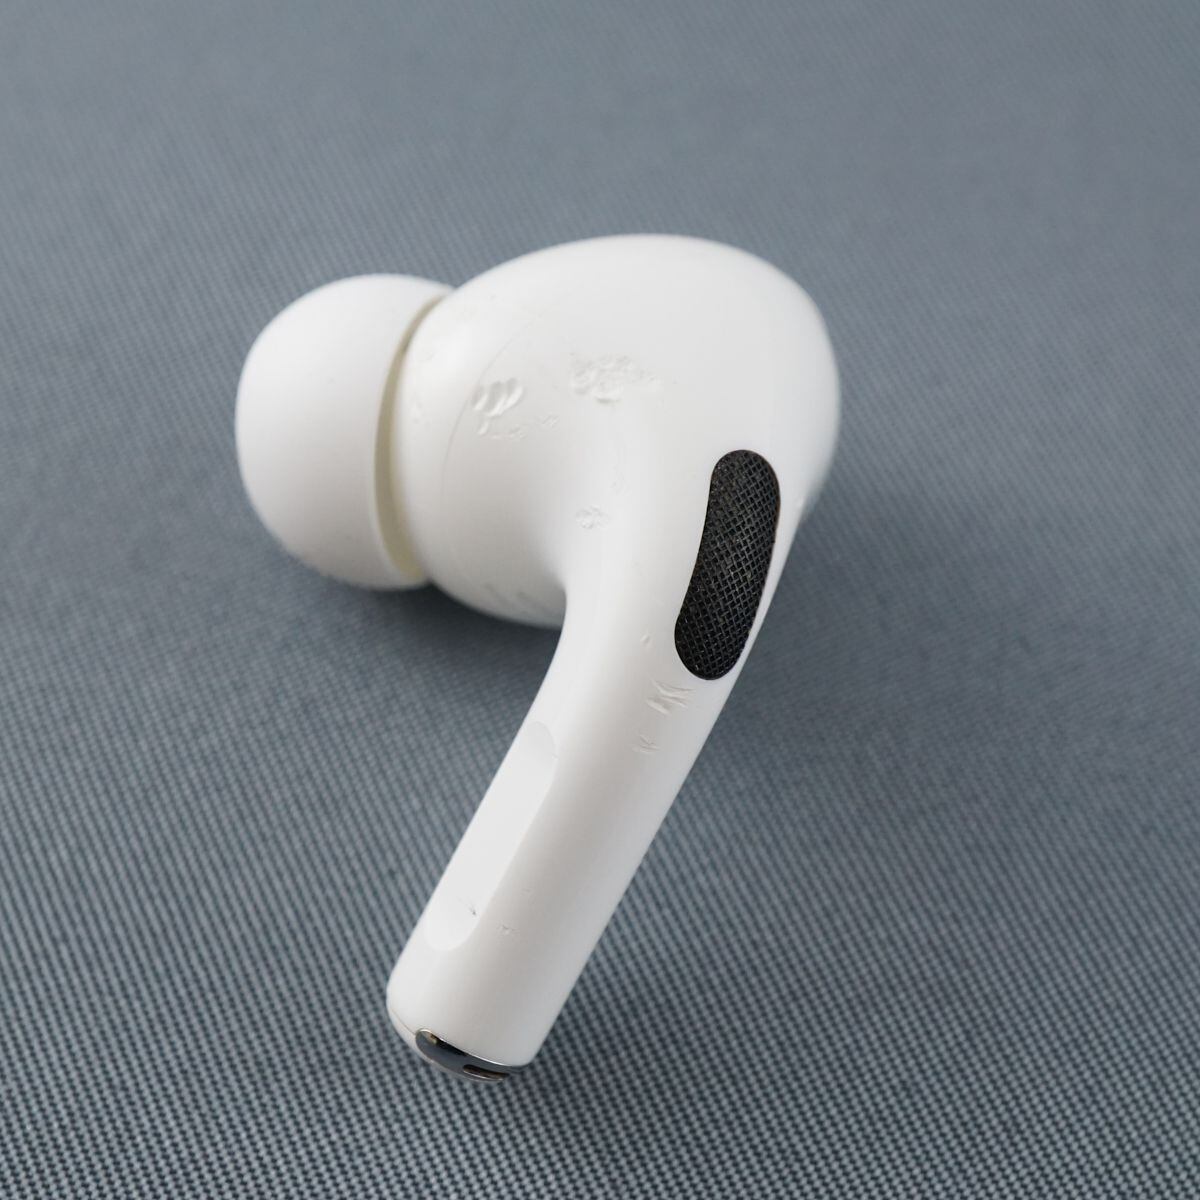 Apple純正ワイヤレスイヤホンAirPods第2世代左耳